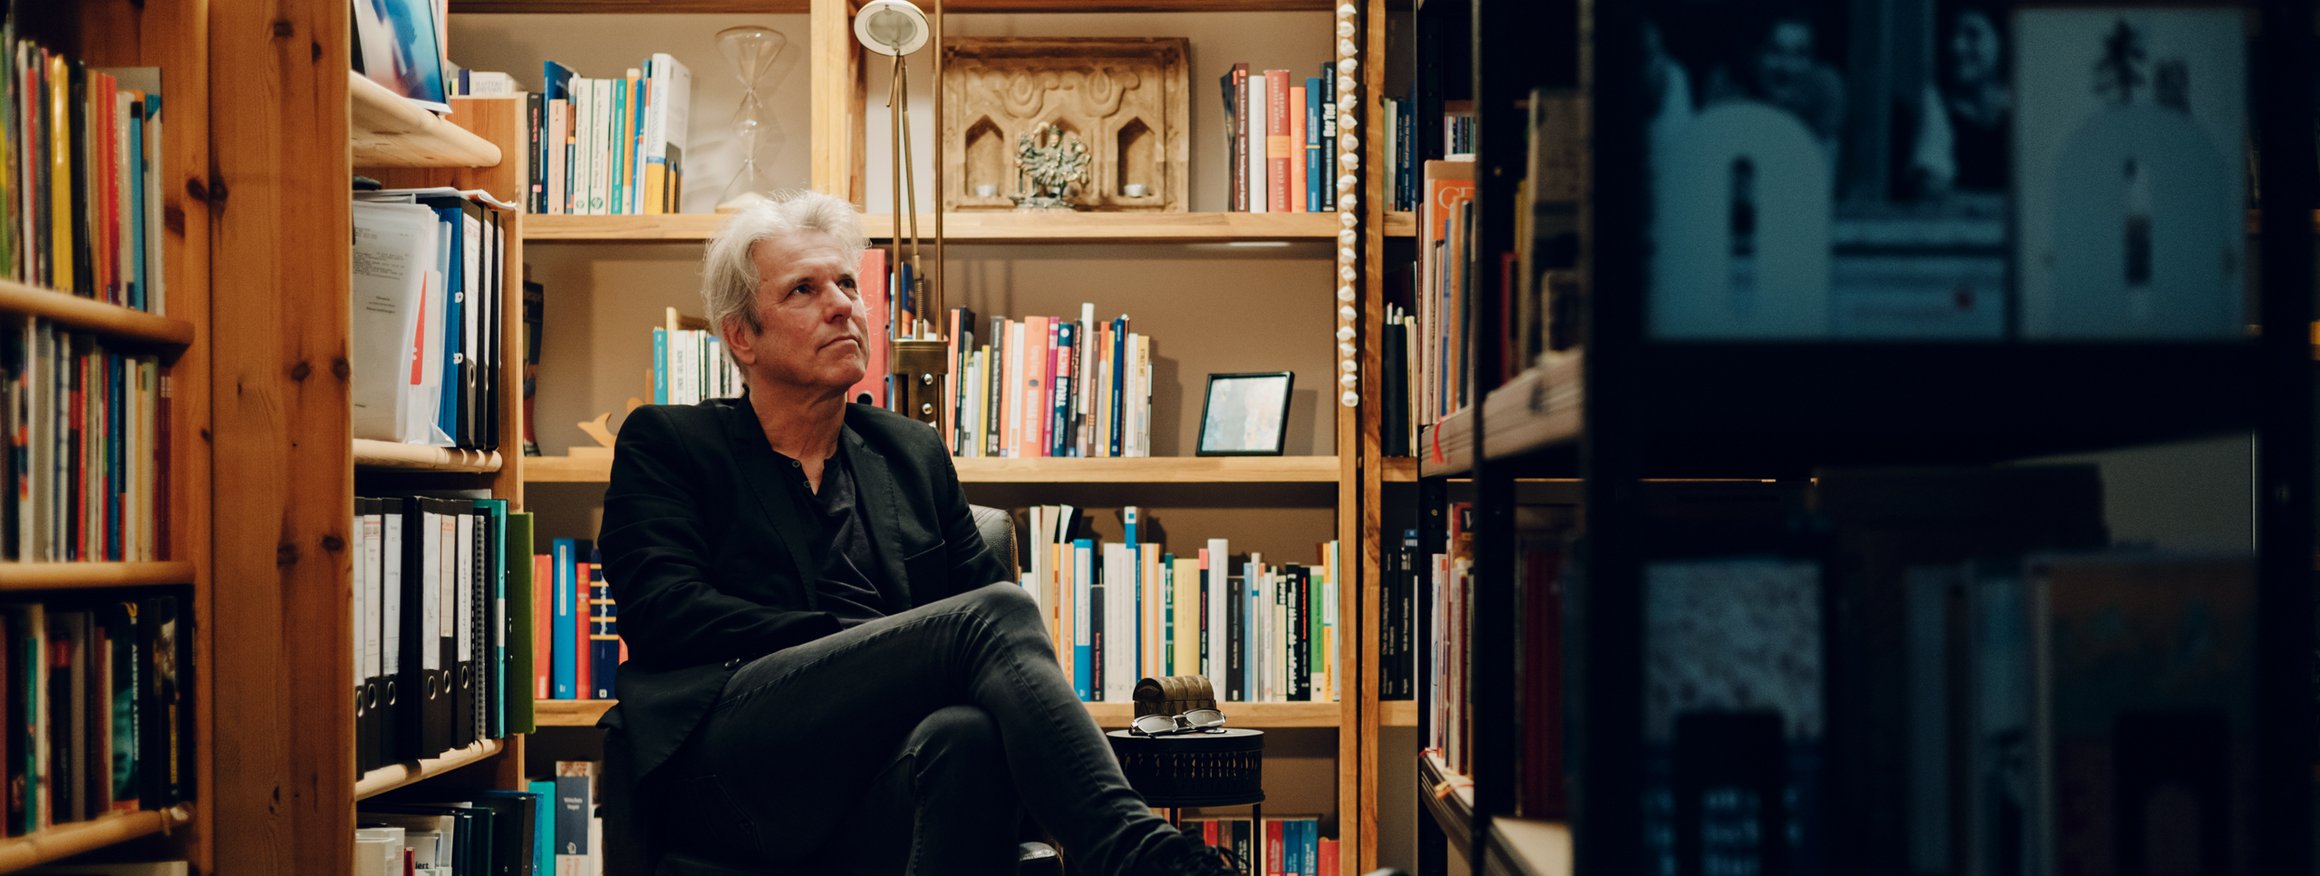 Der Psychoanalytiker und Verhaltenstherapeut, Ralf T. Vogel, sitzt in einem Sessel vor Bücherregalen